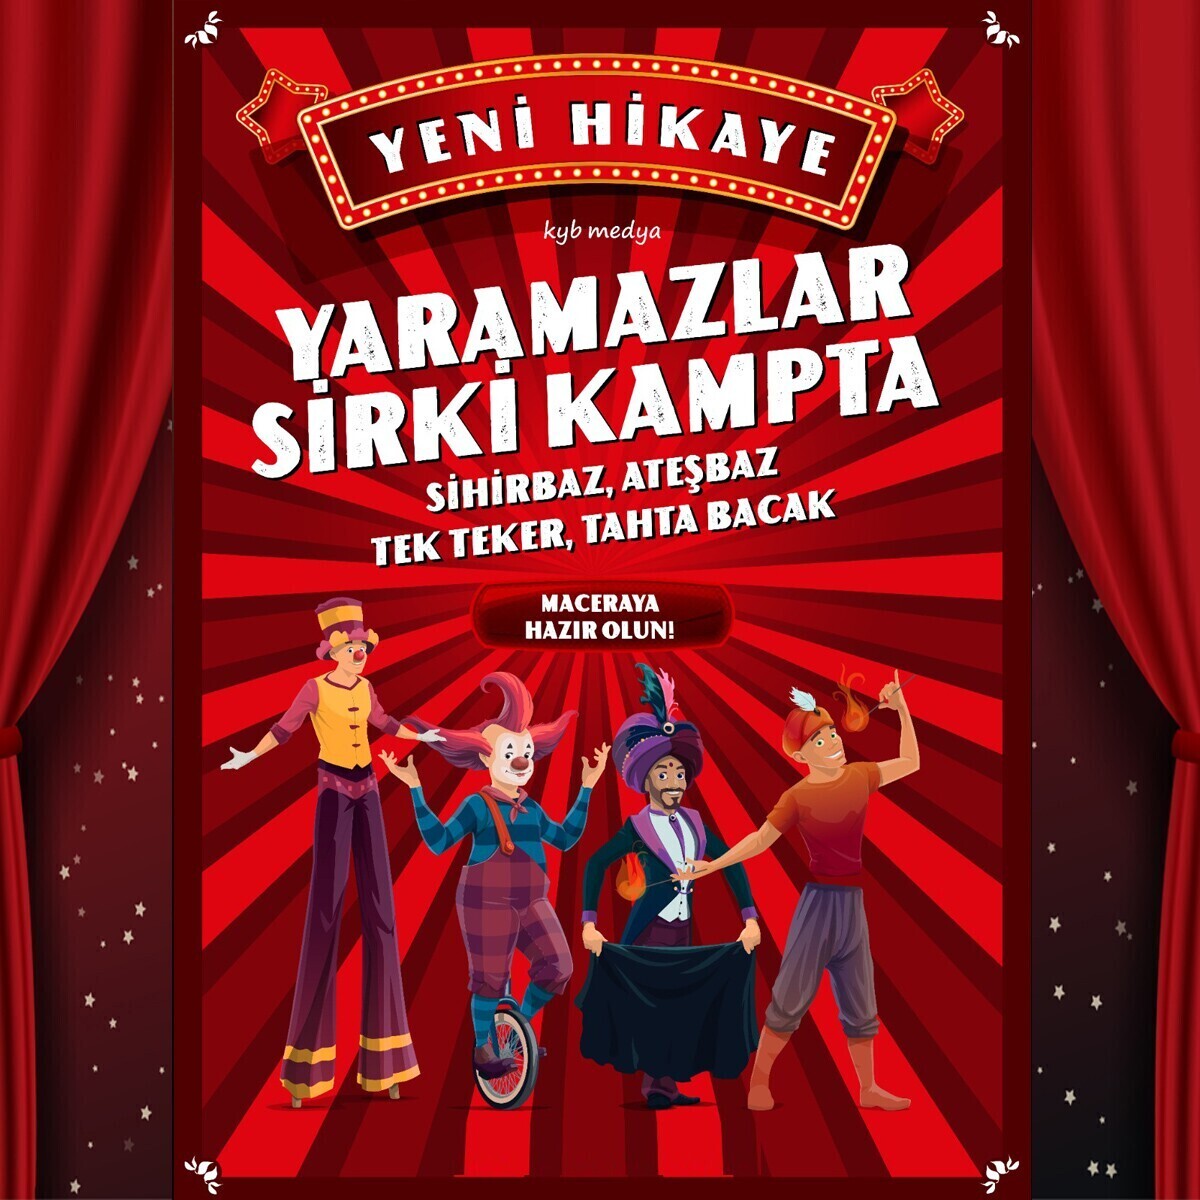 'Yaramazlar Sirki Kampta' Çocuk Tiyatro Bileti